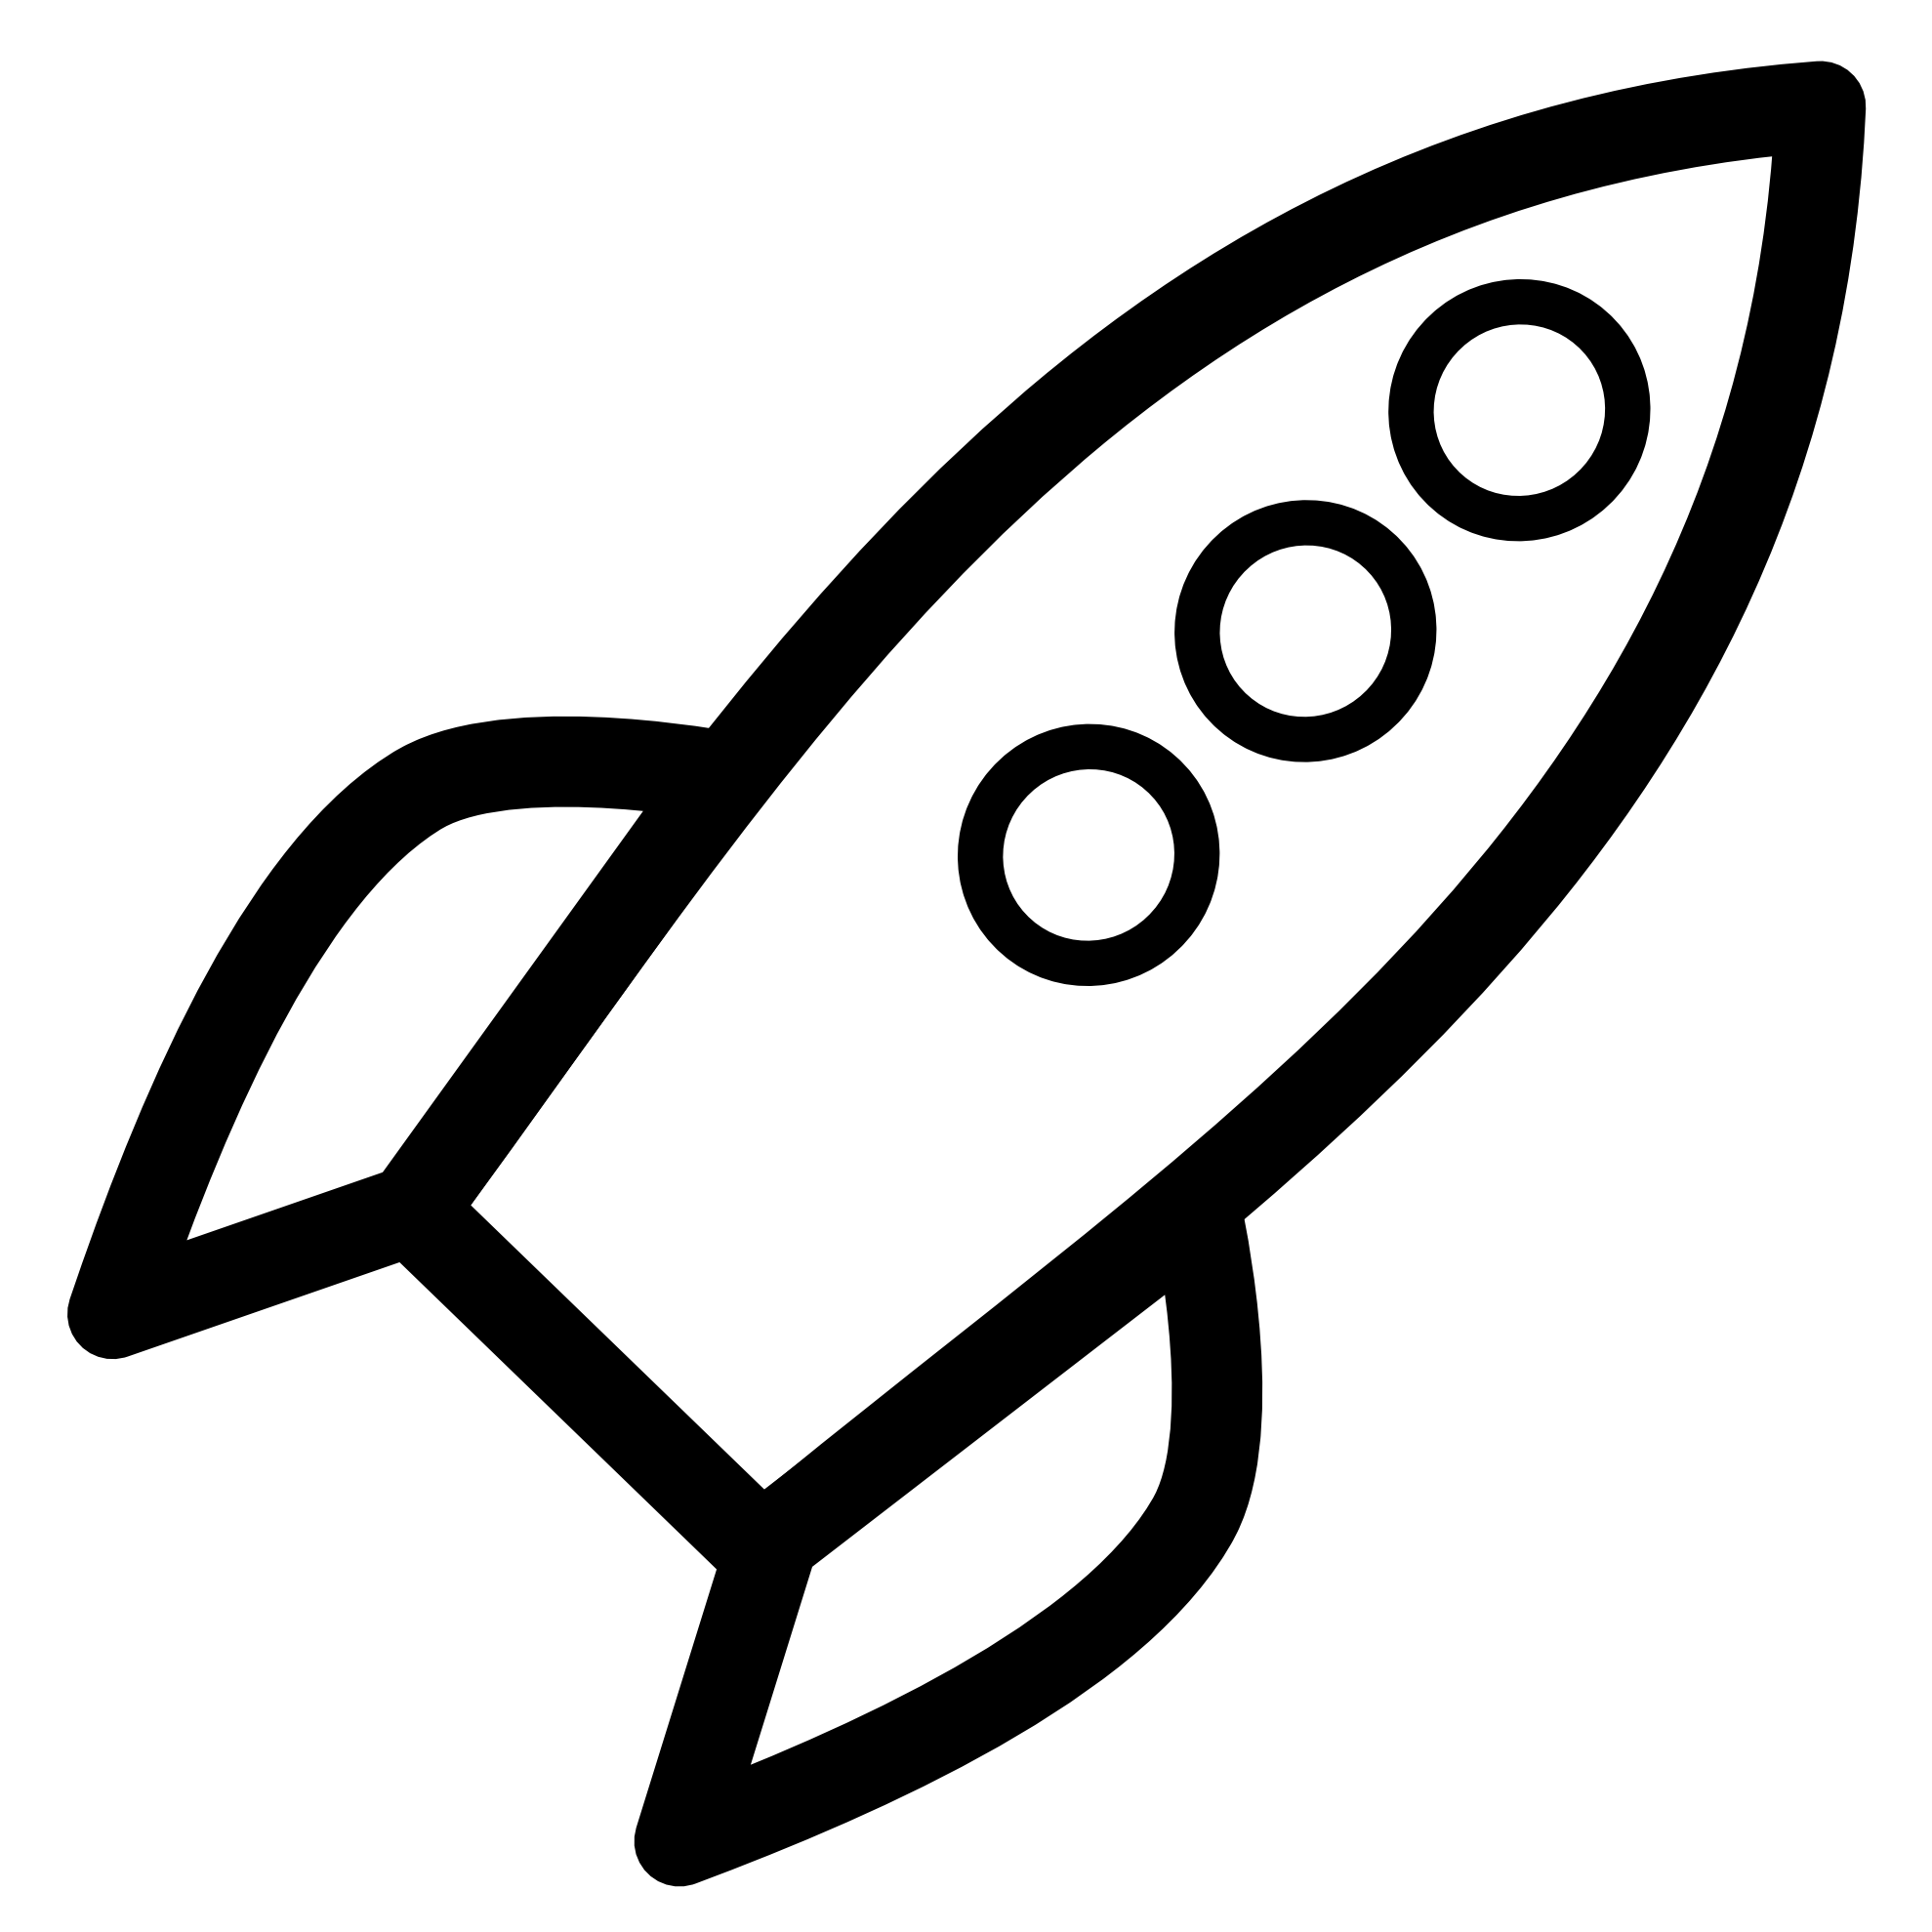 Moon clipart rocket. Rocketship ship clipartbarn download